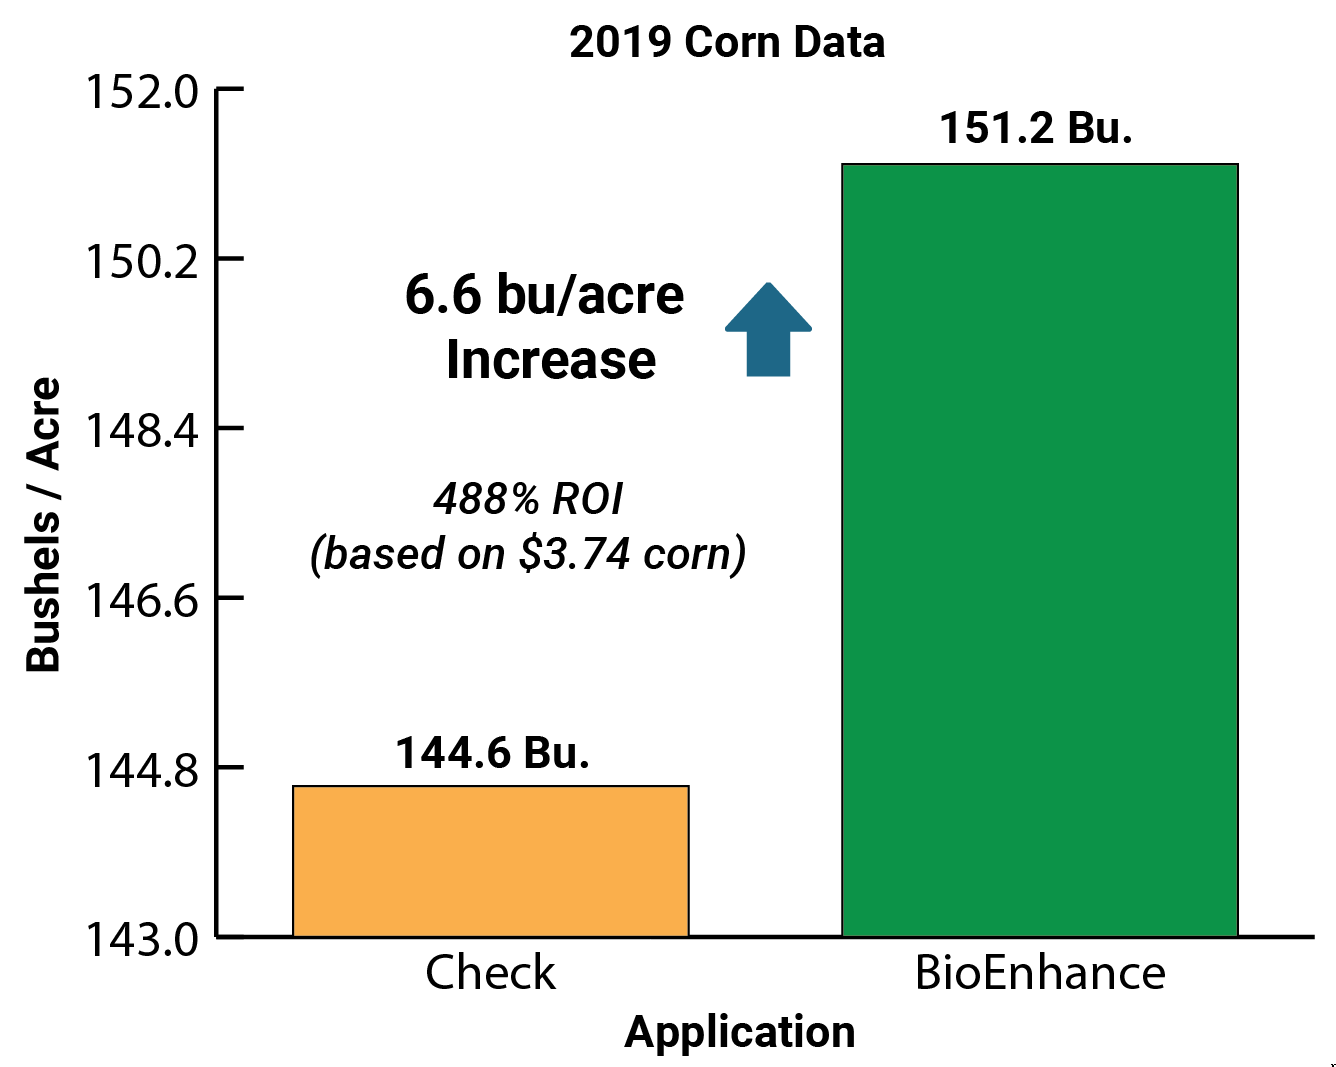 BioEnhance 2019 Corn Data